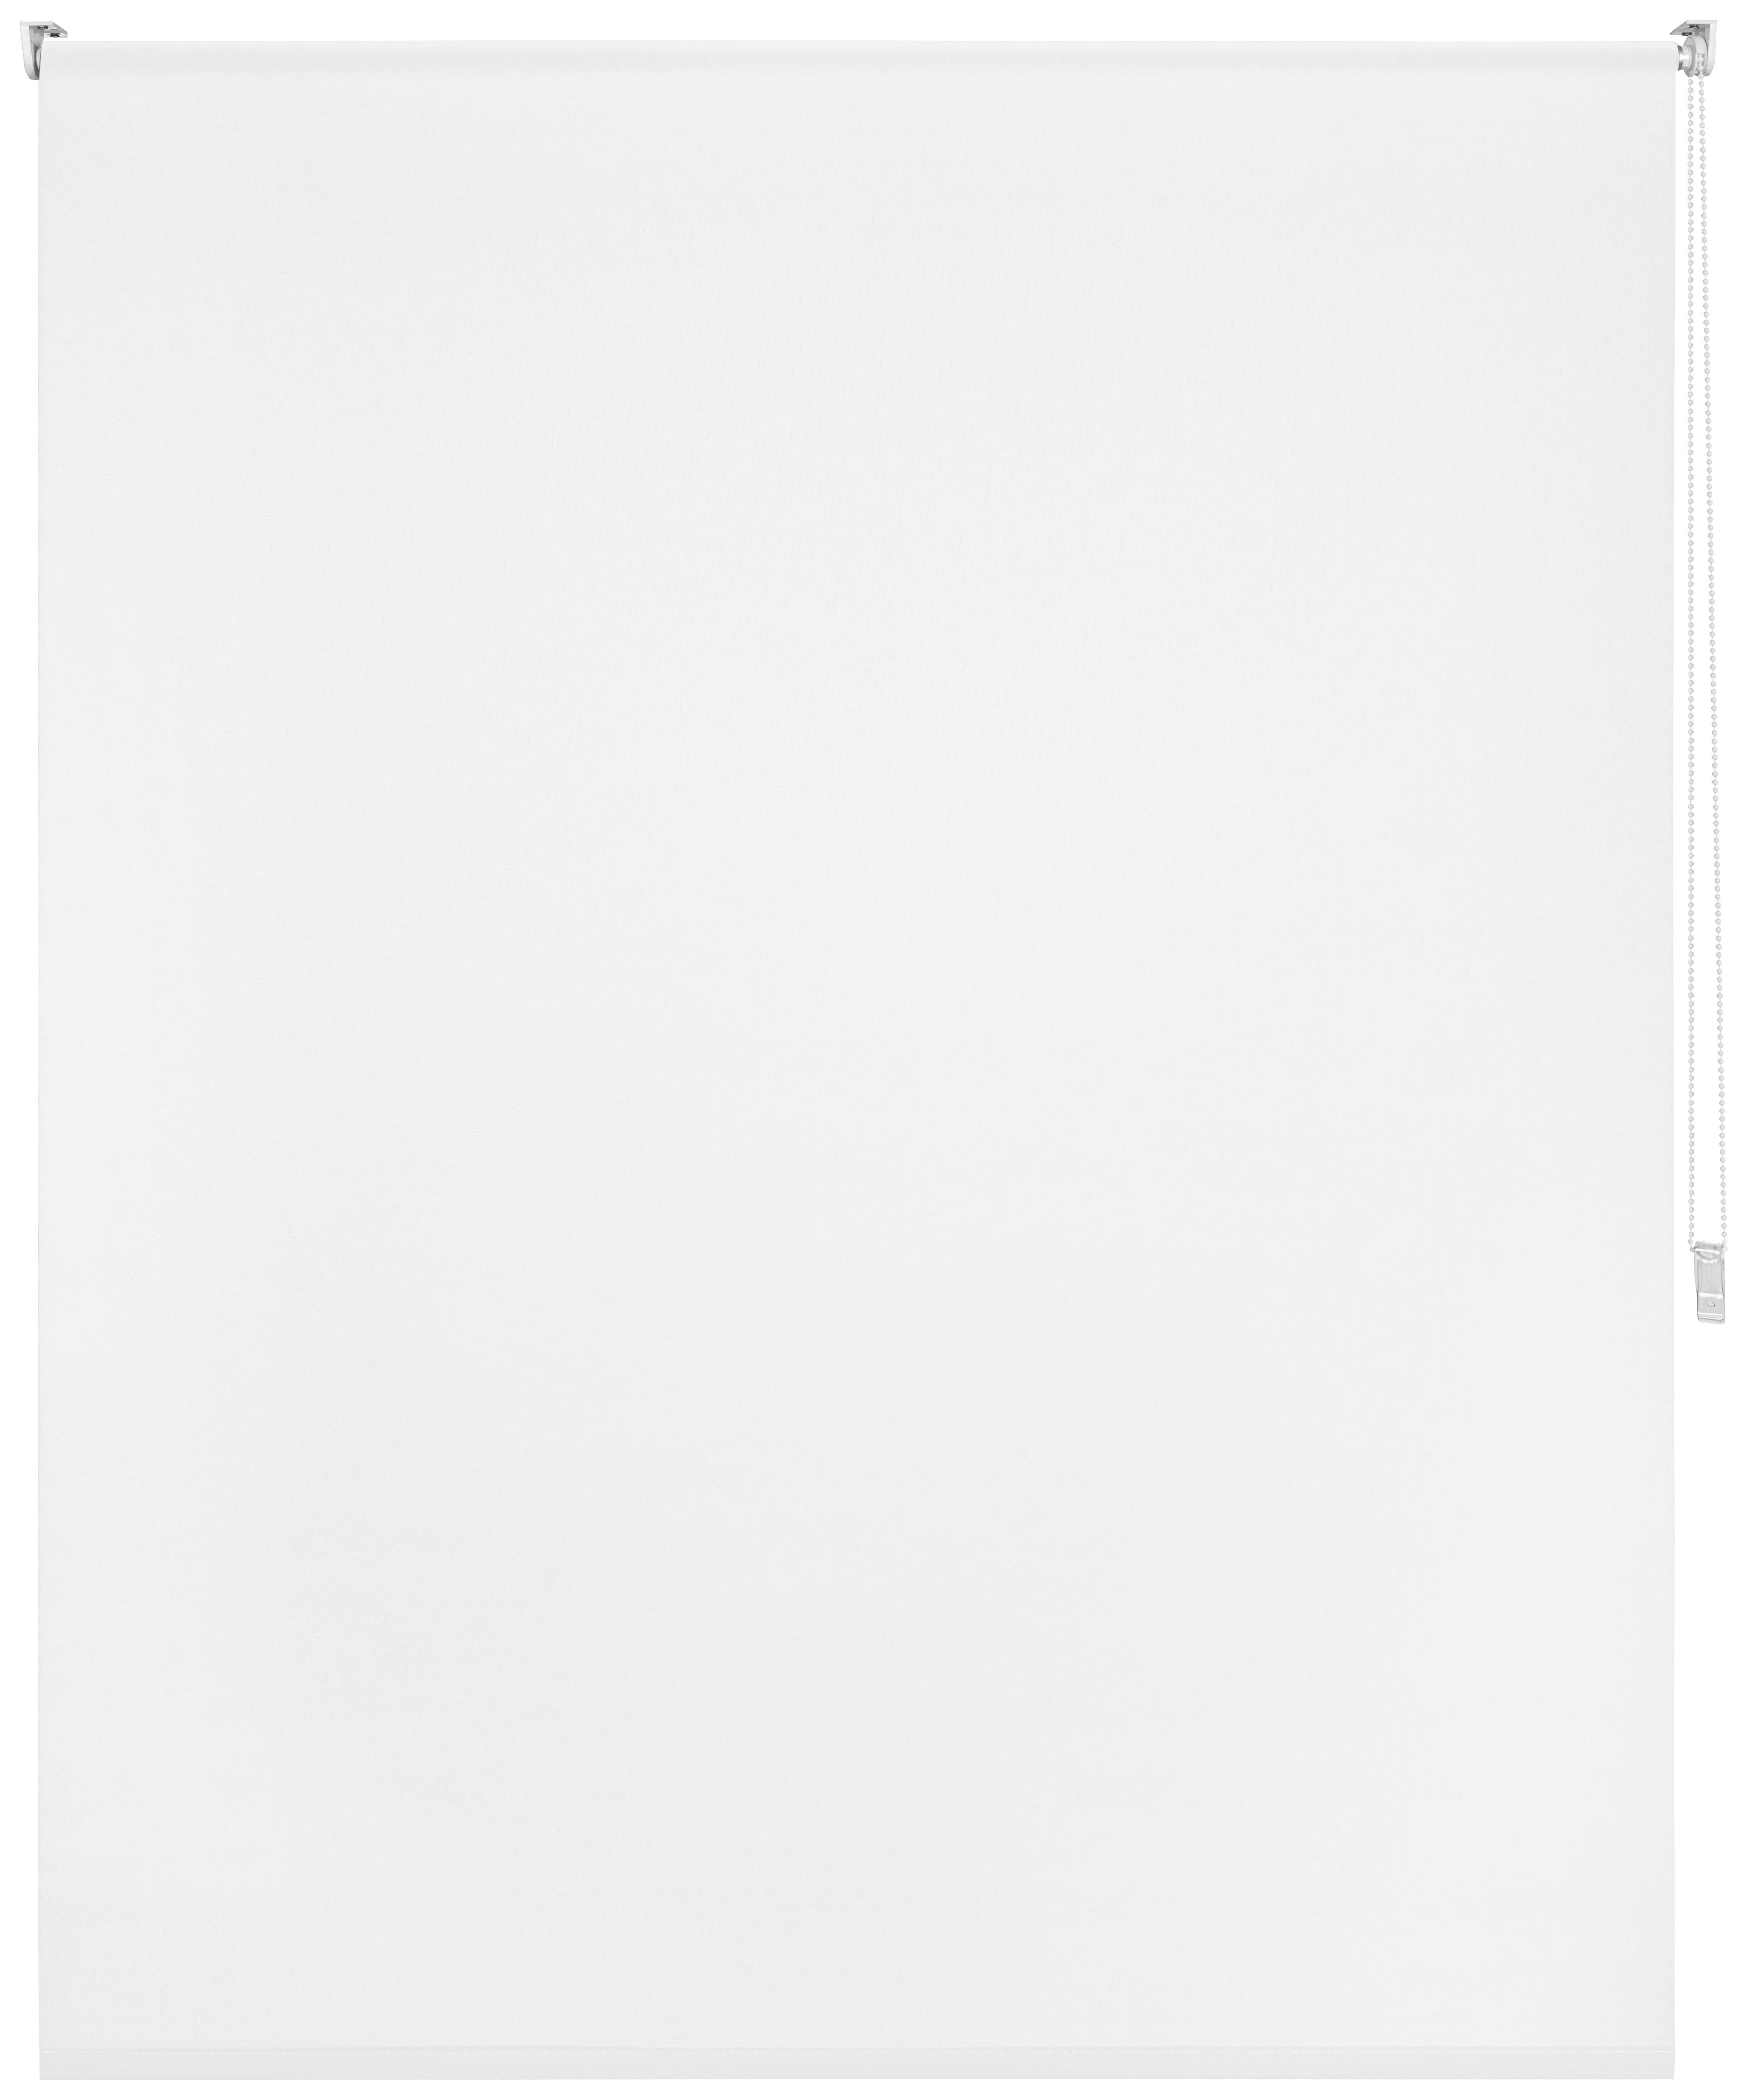 Klemmrollo Daylight, ca. 120x150cm - Weiß, MODERN, Textil (120/150cm) - Modern Living